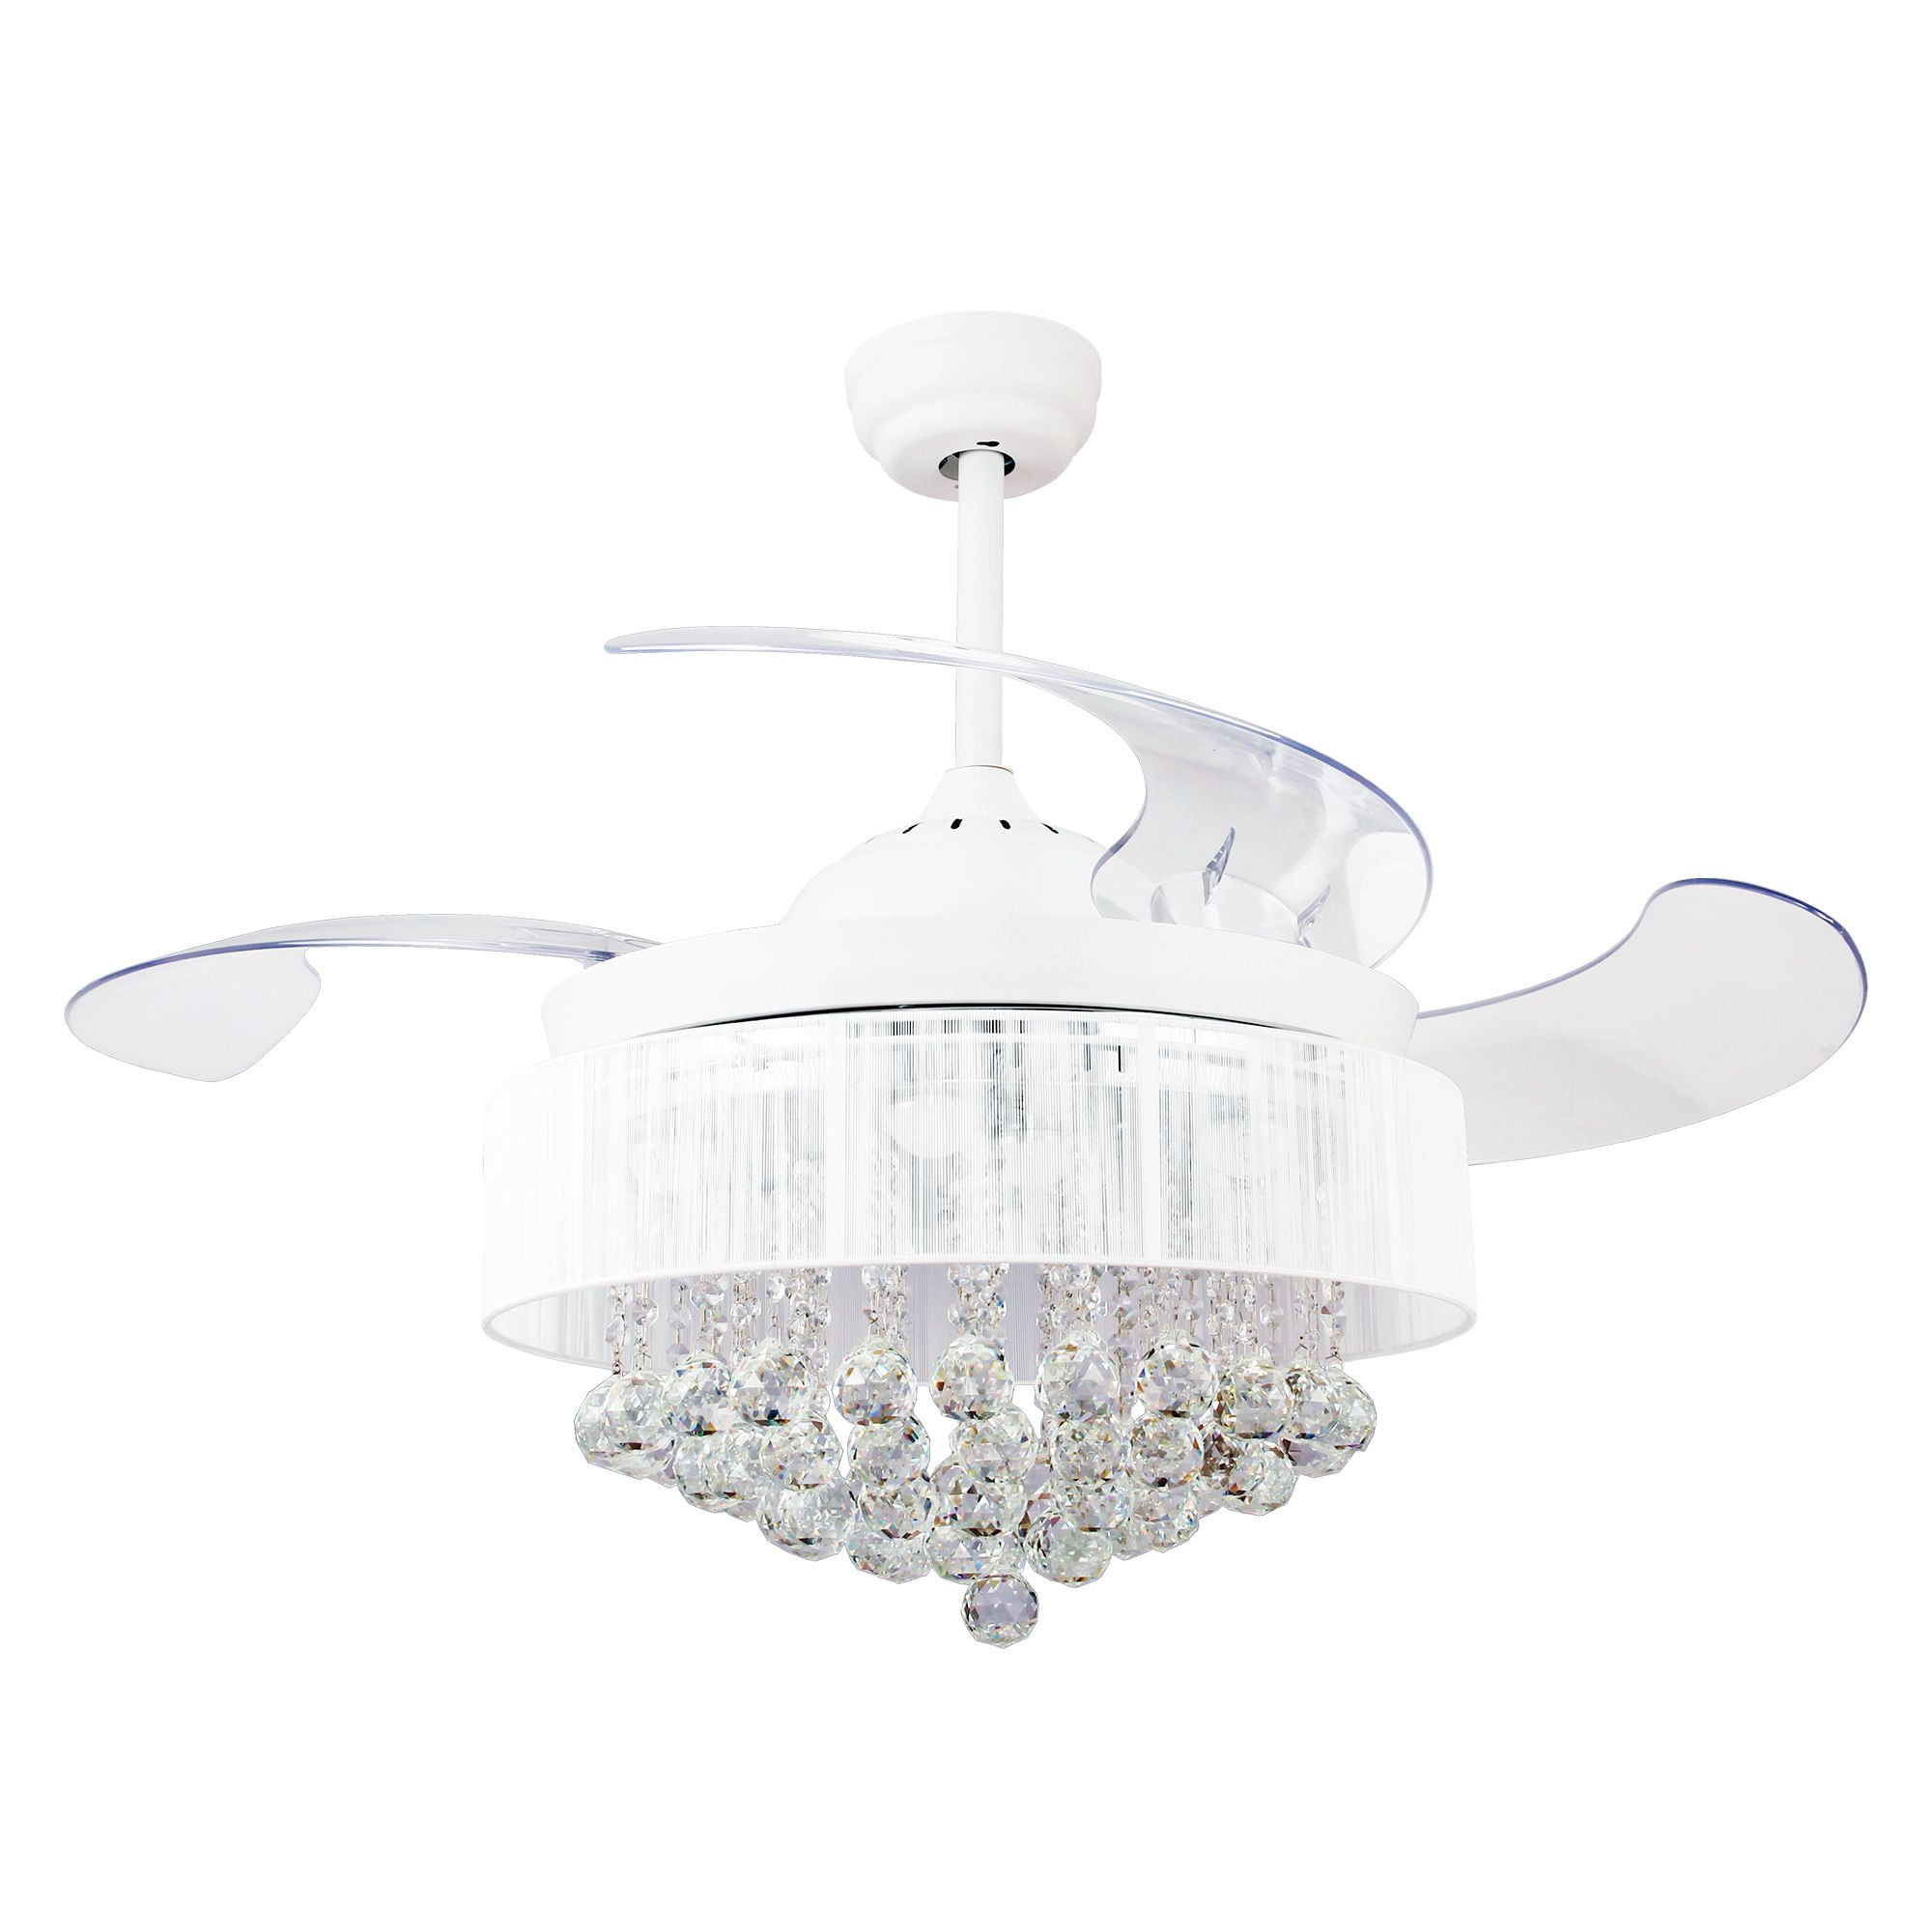 46" Crystal Chandelier Fan Remote Ceiling Fan w/ LED Lights Retractable Blades 